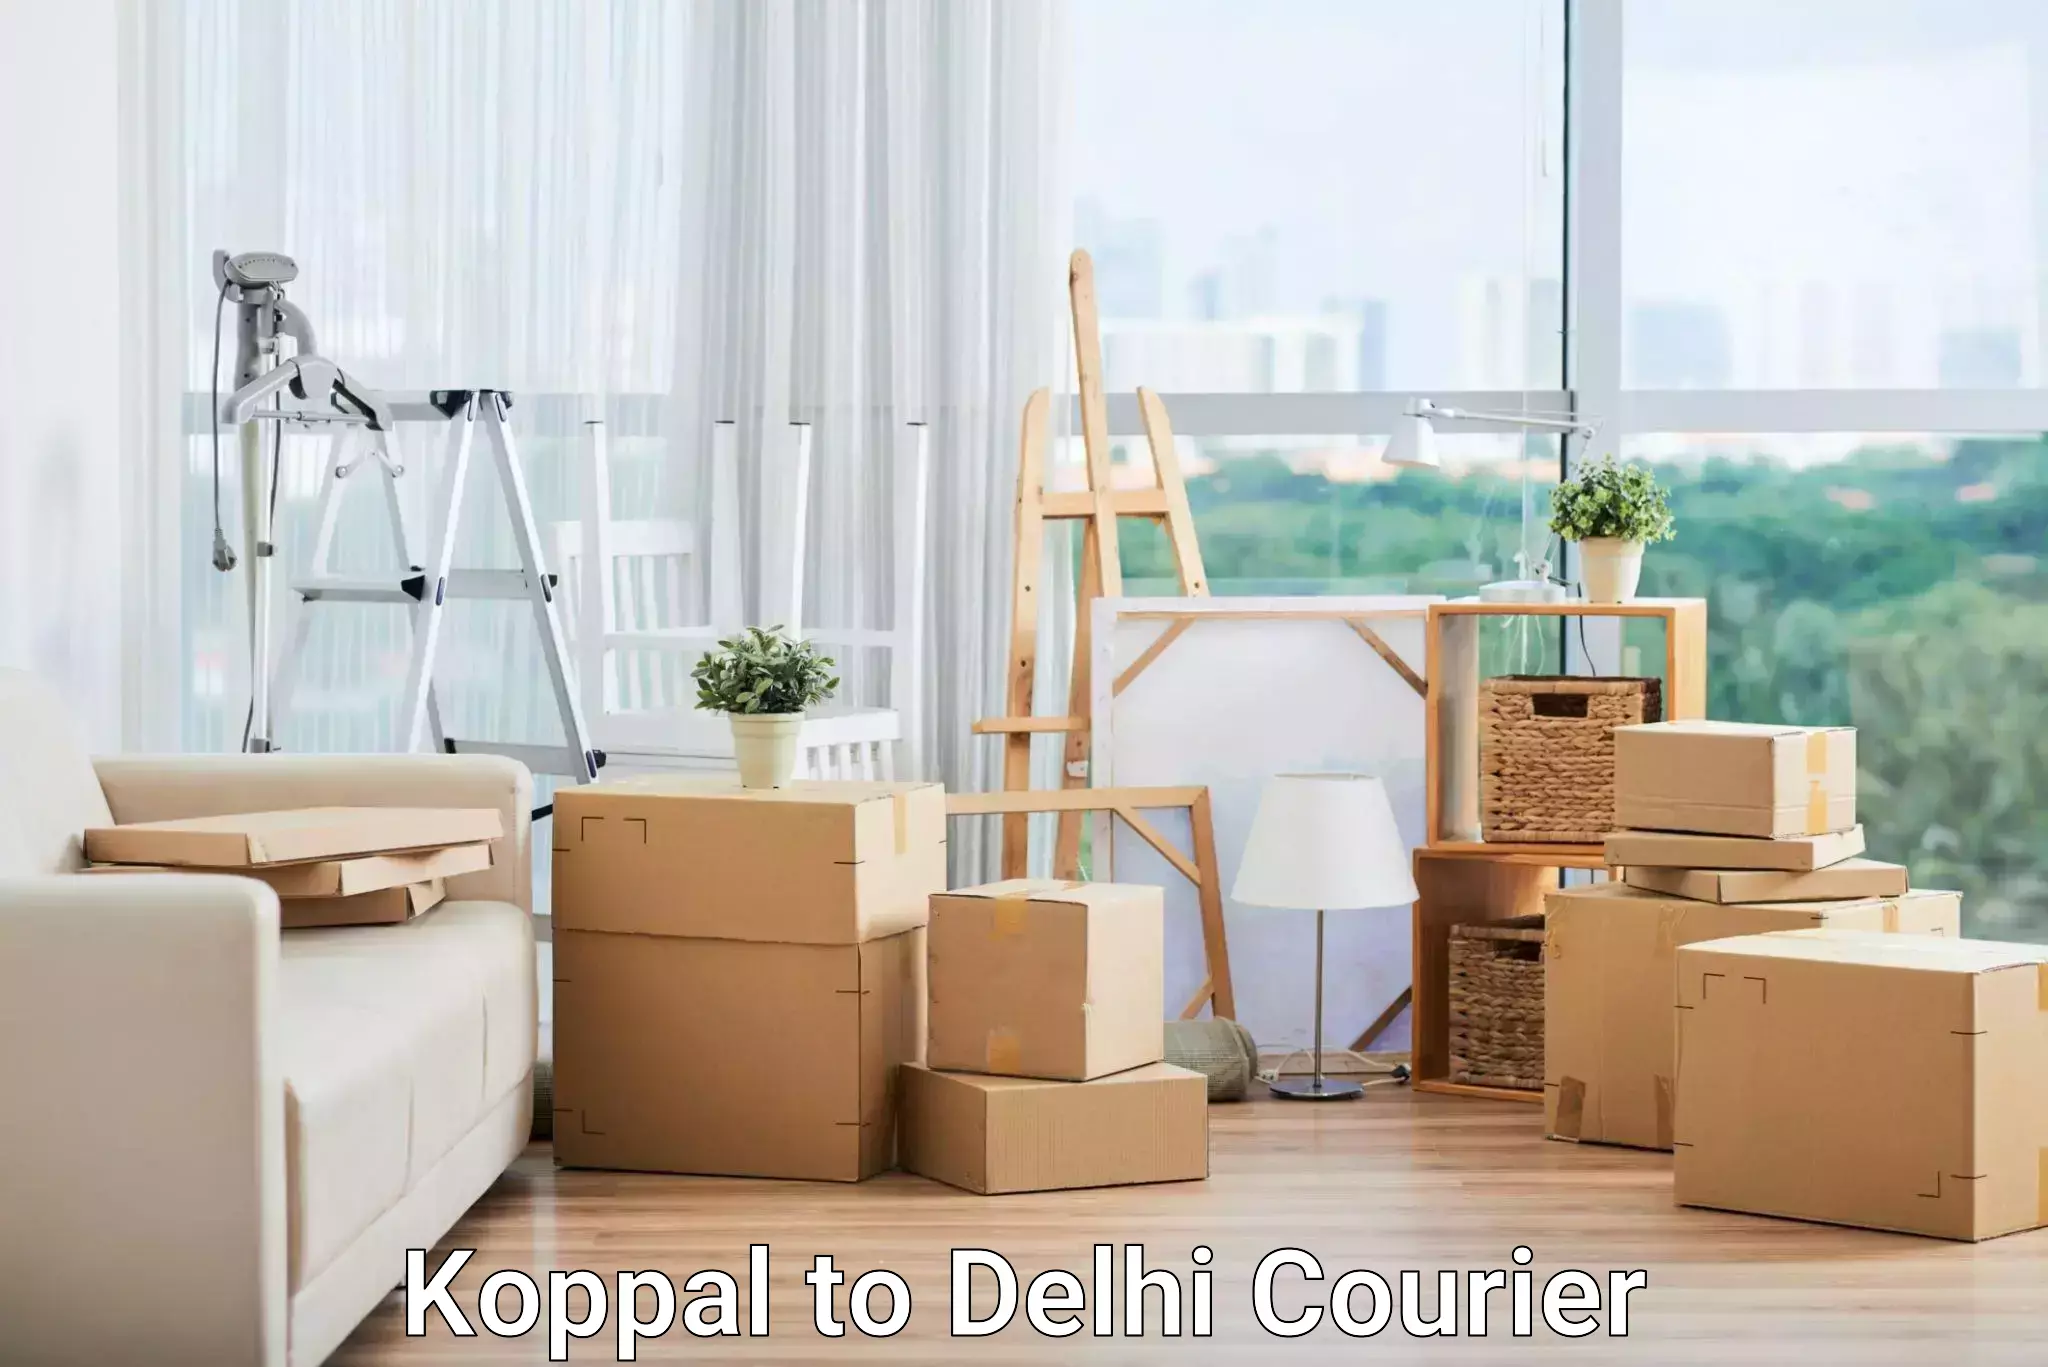 Affordable parcel service Koppal to Delhi